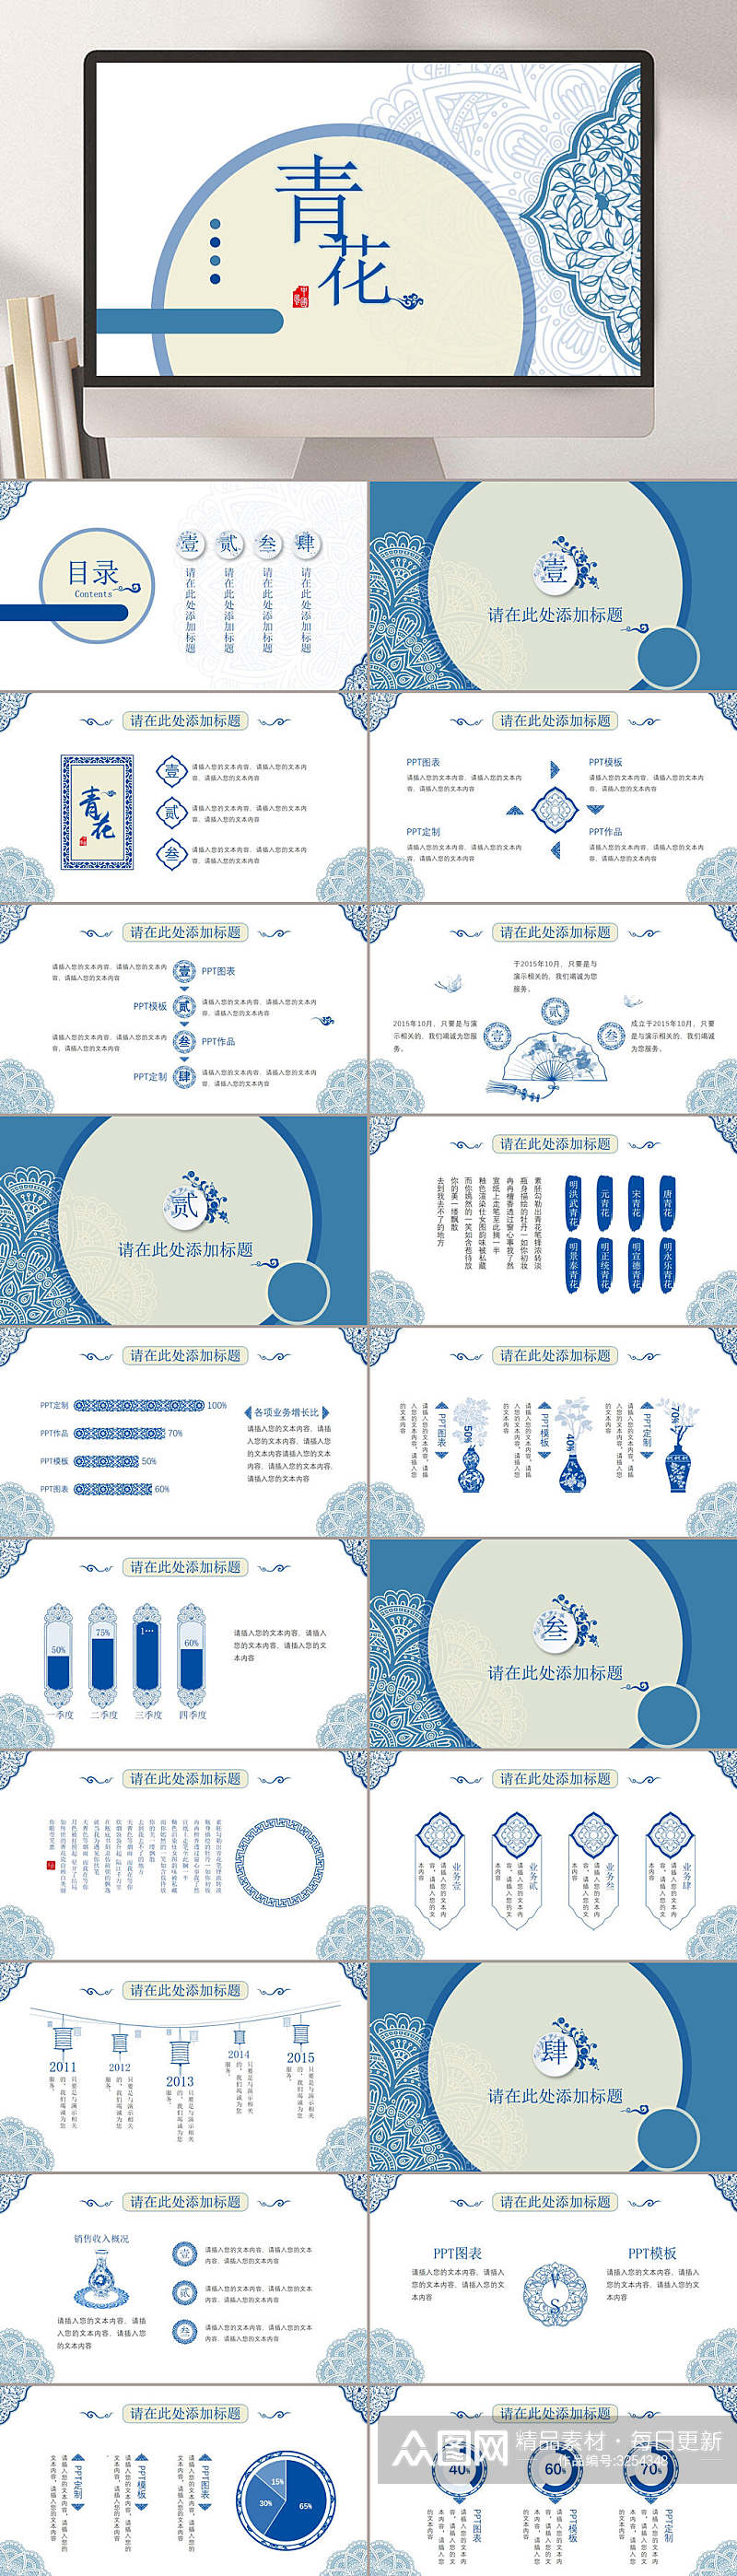 青色青花瓷器创意中国风PPT素材